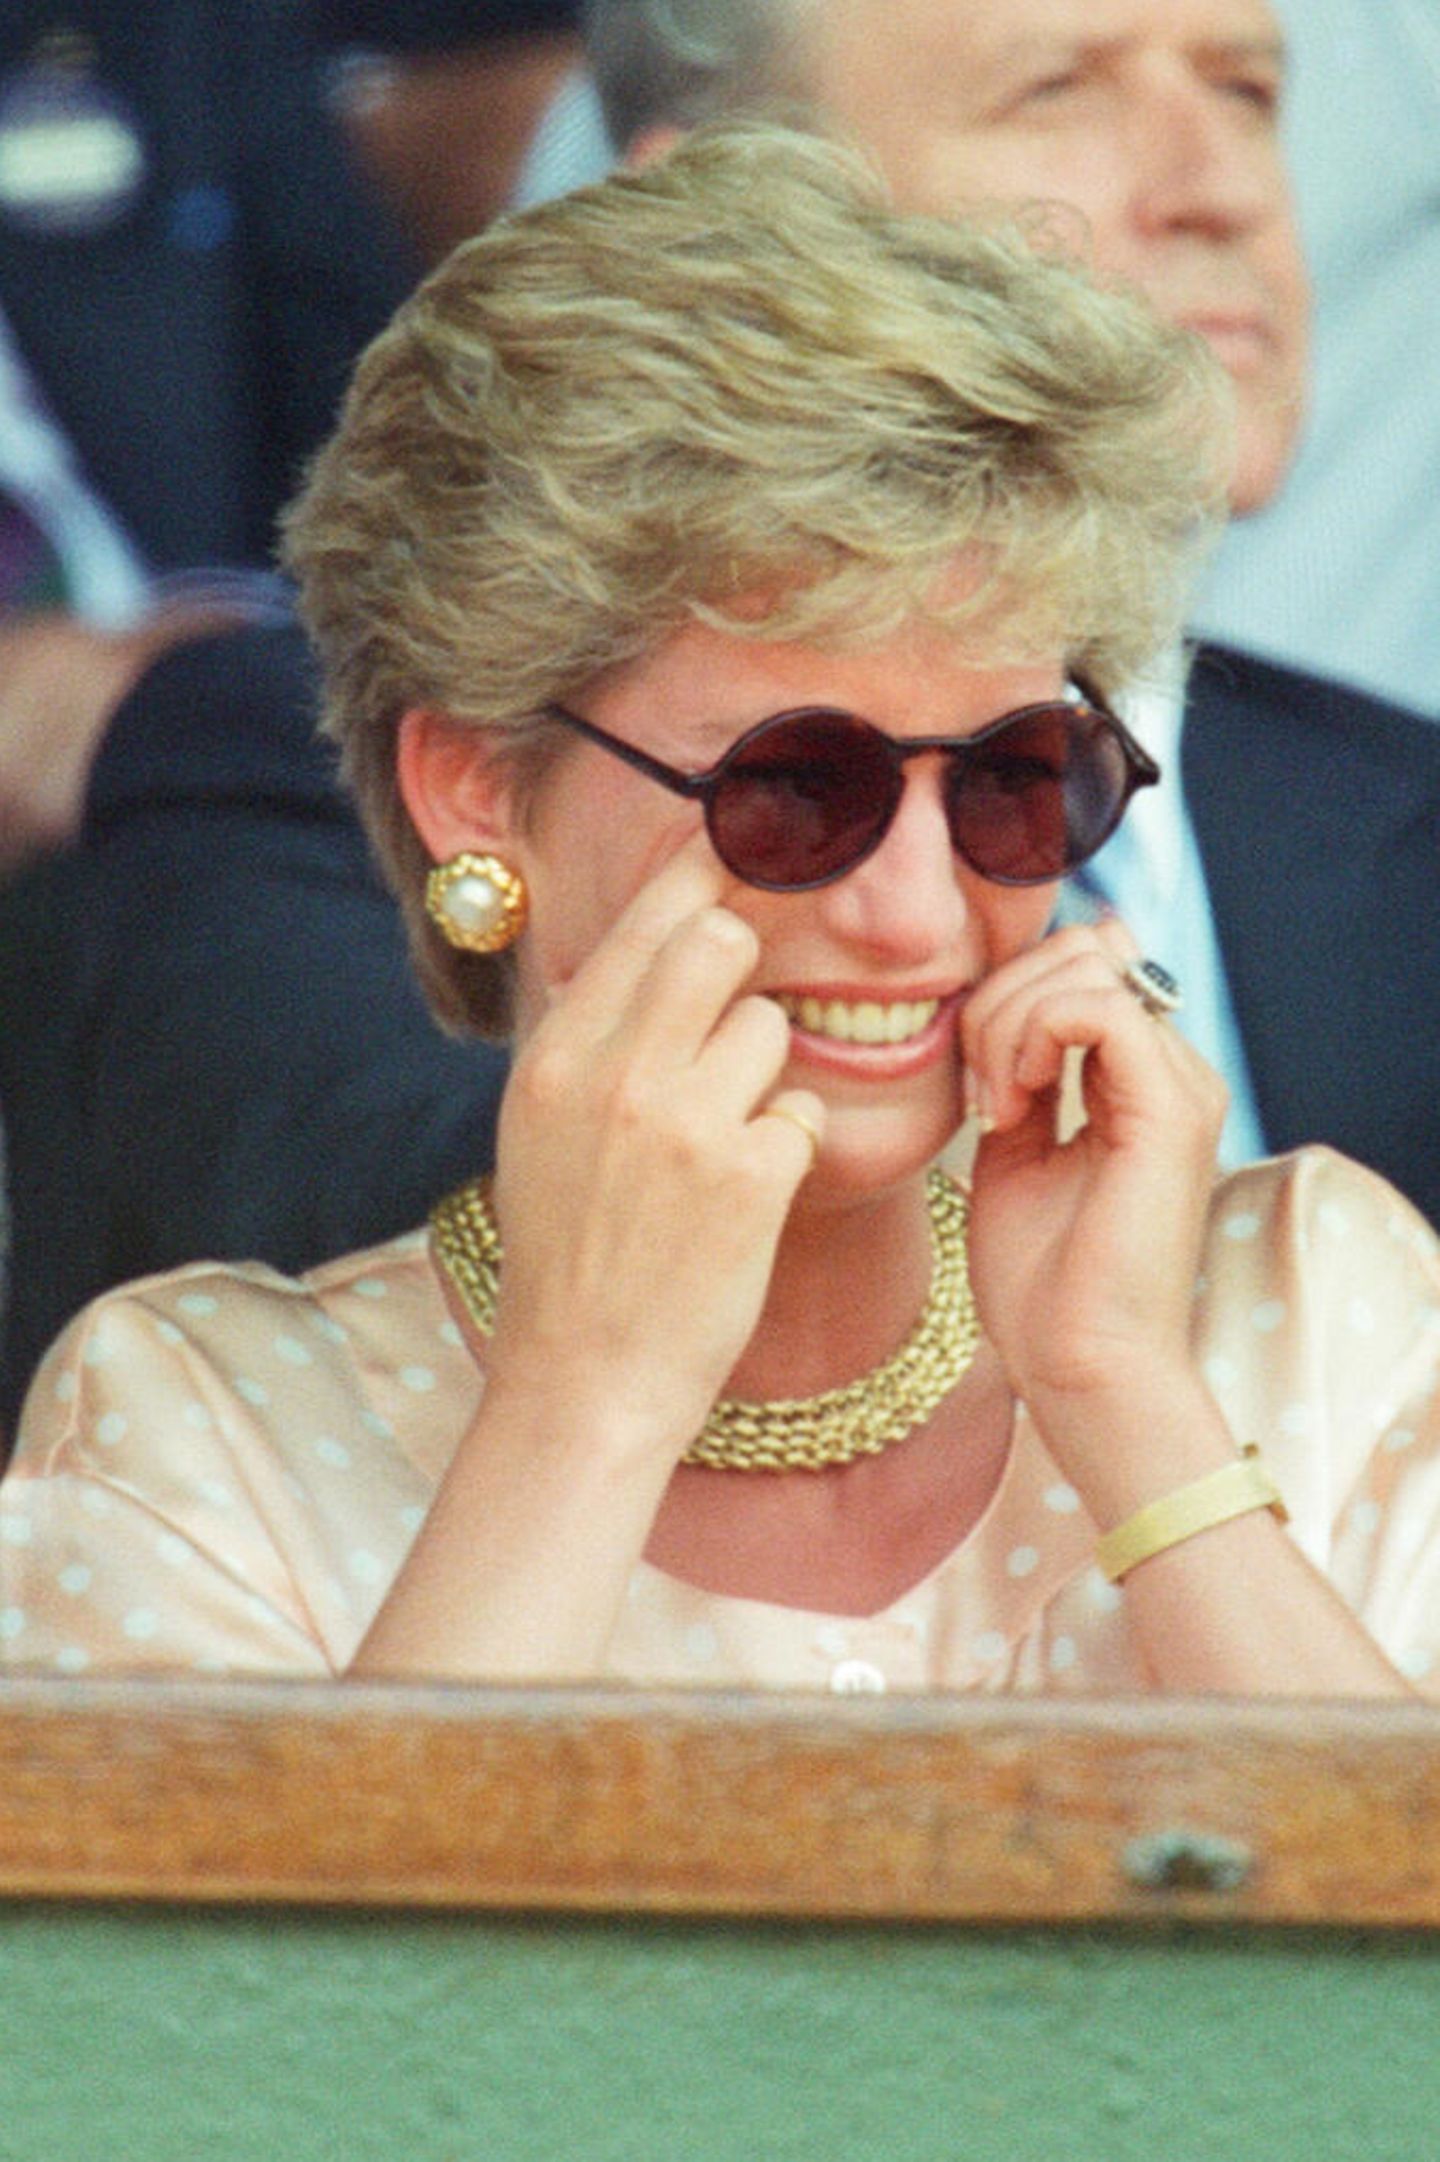 1993 in Wimbledon wagt sie sich an eine ganz neue Brillenform heran. Weg von Oversize hin zu klein und rund im John-Lennon-Stil. 